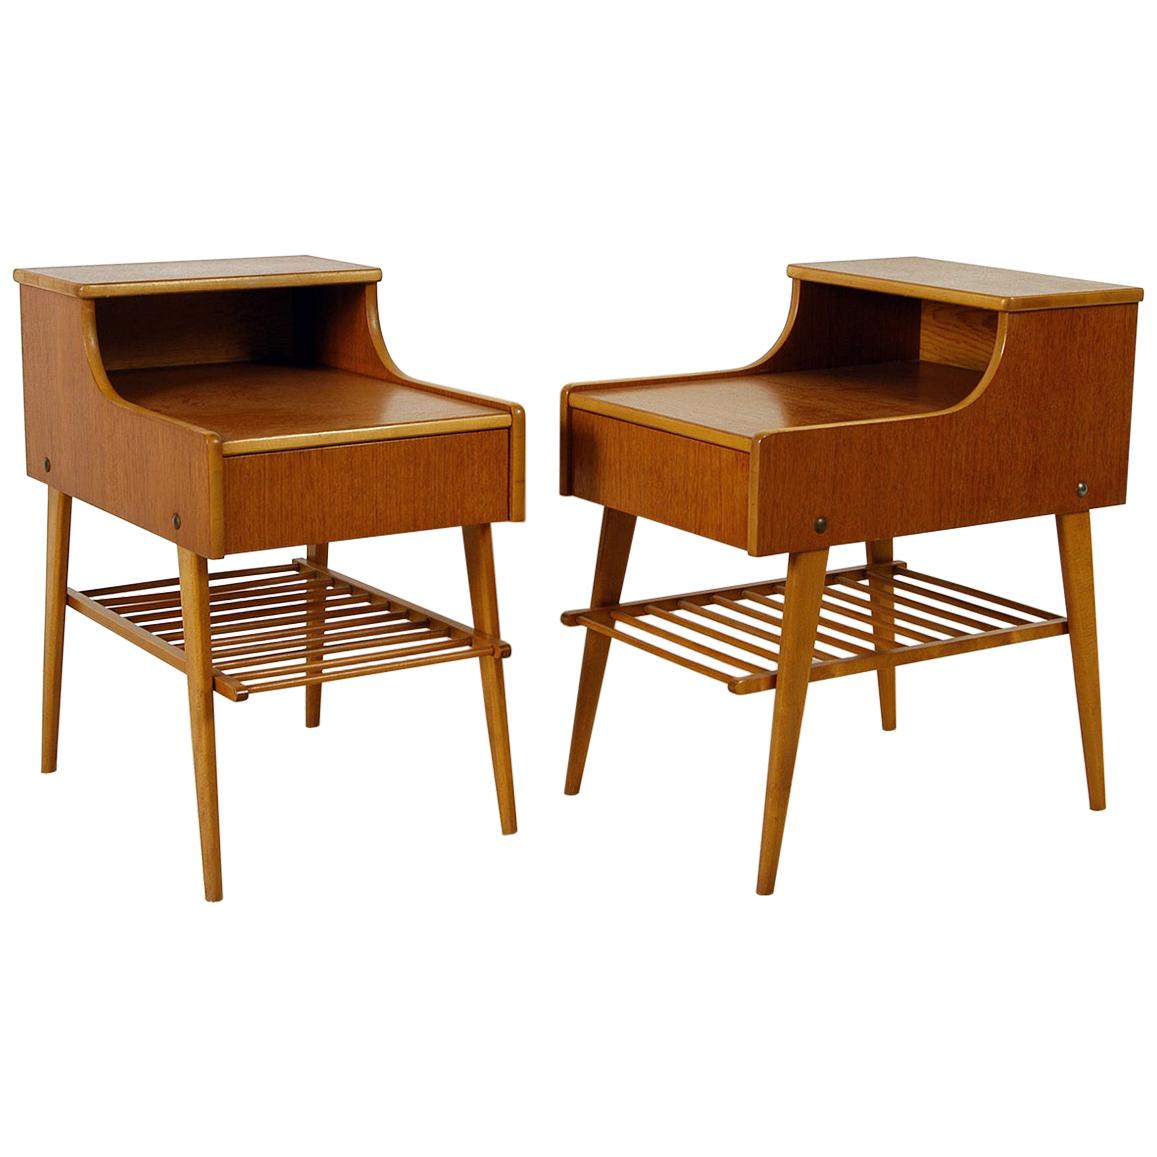 Pair of 1950s Midcentury Modern Swedish Teak Nightstands Bedside Tables